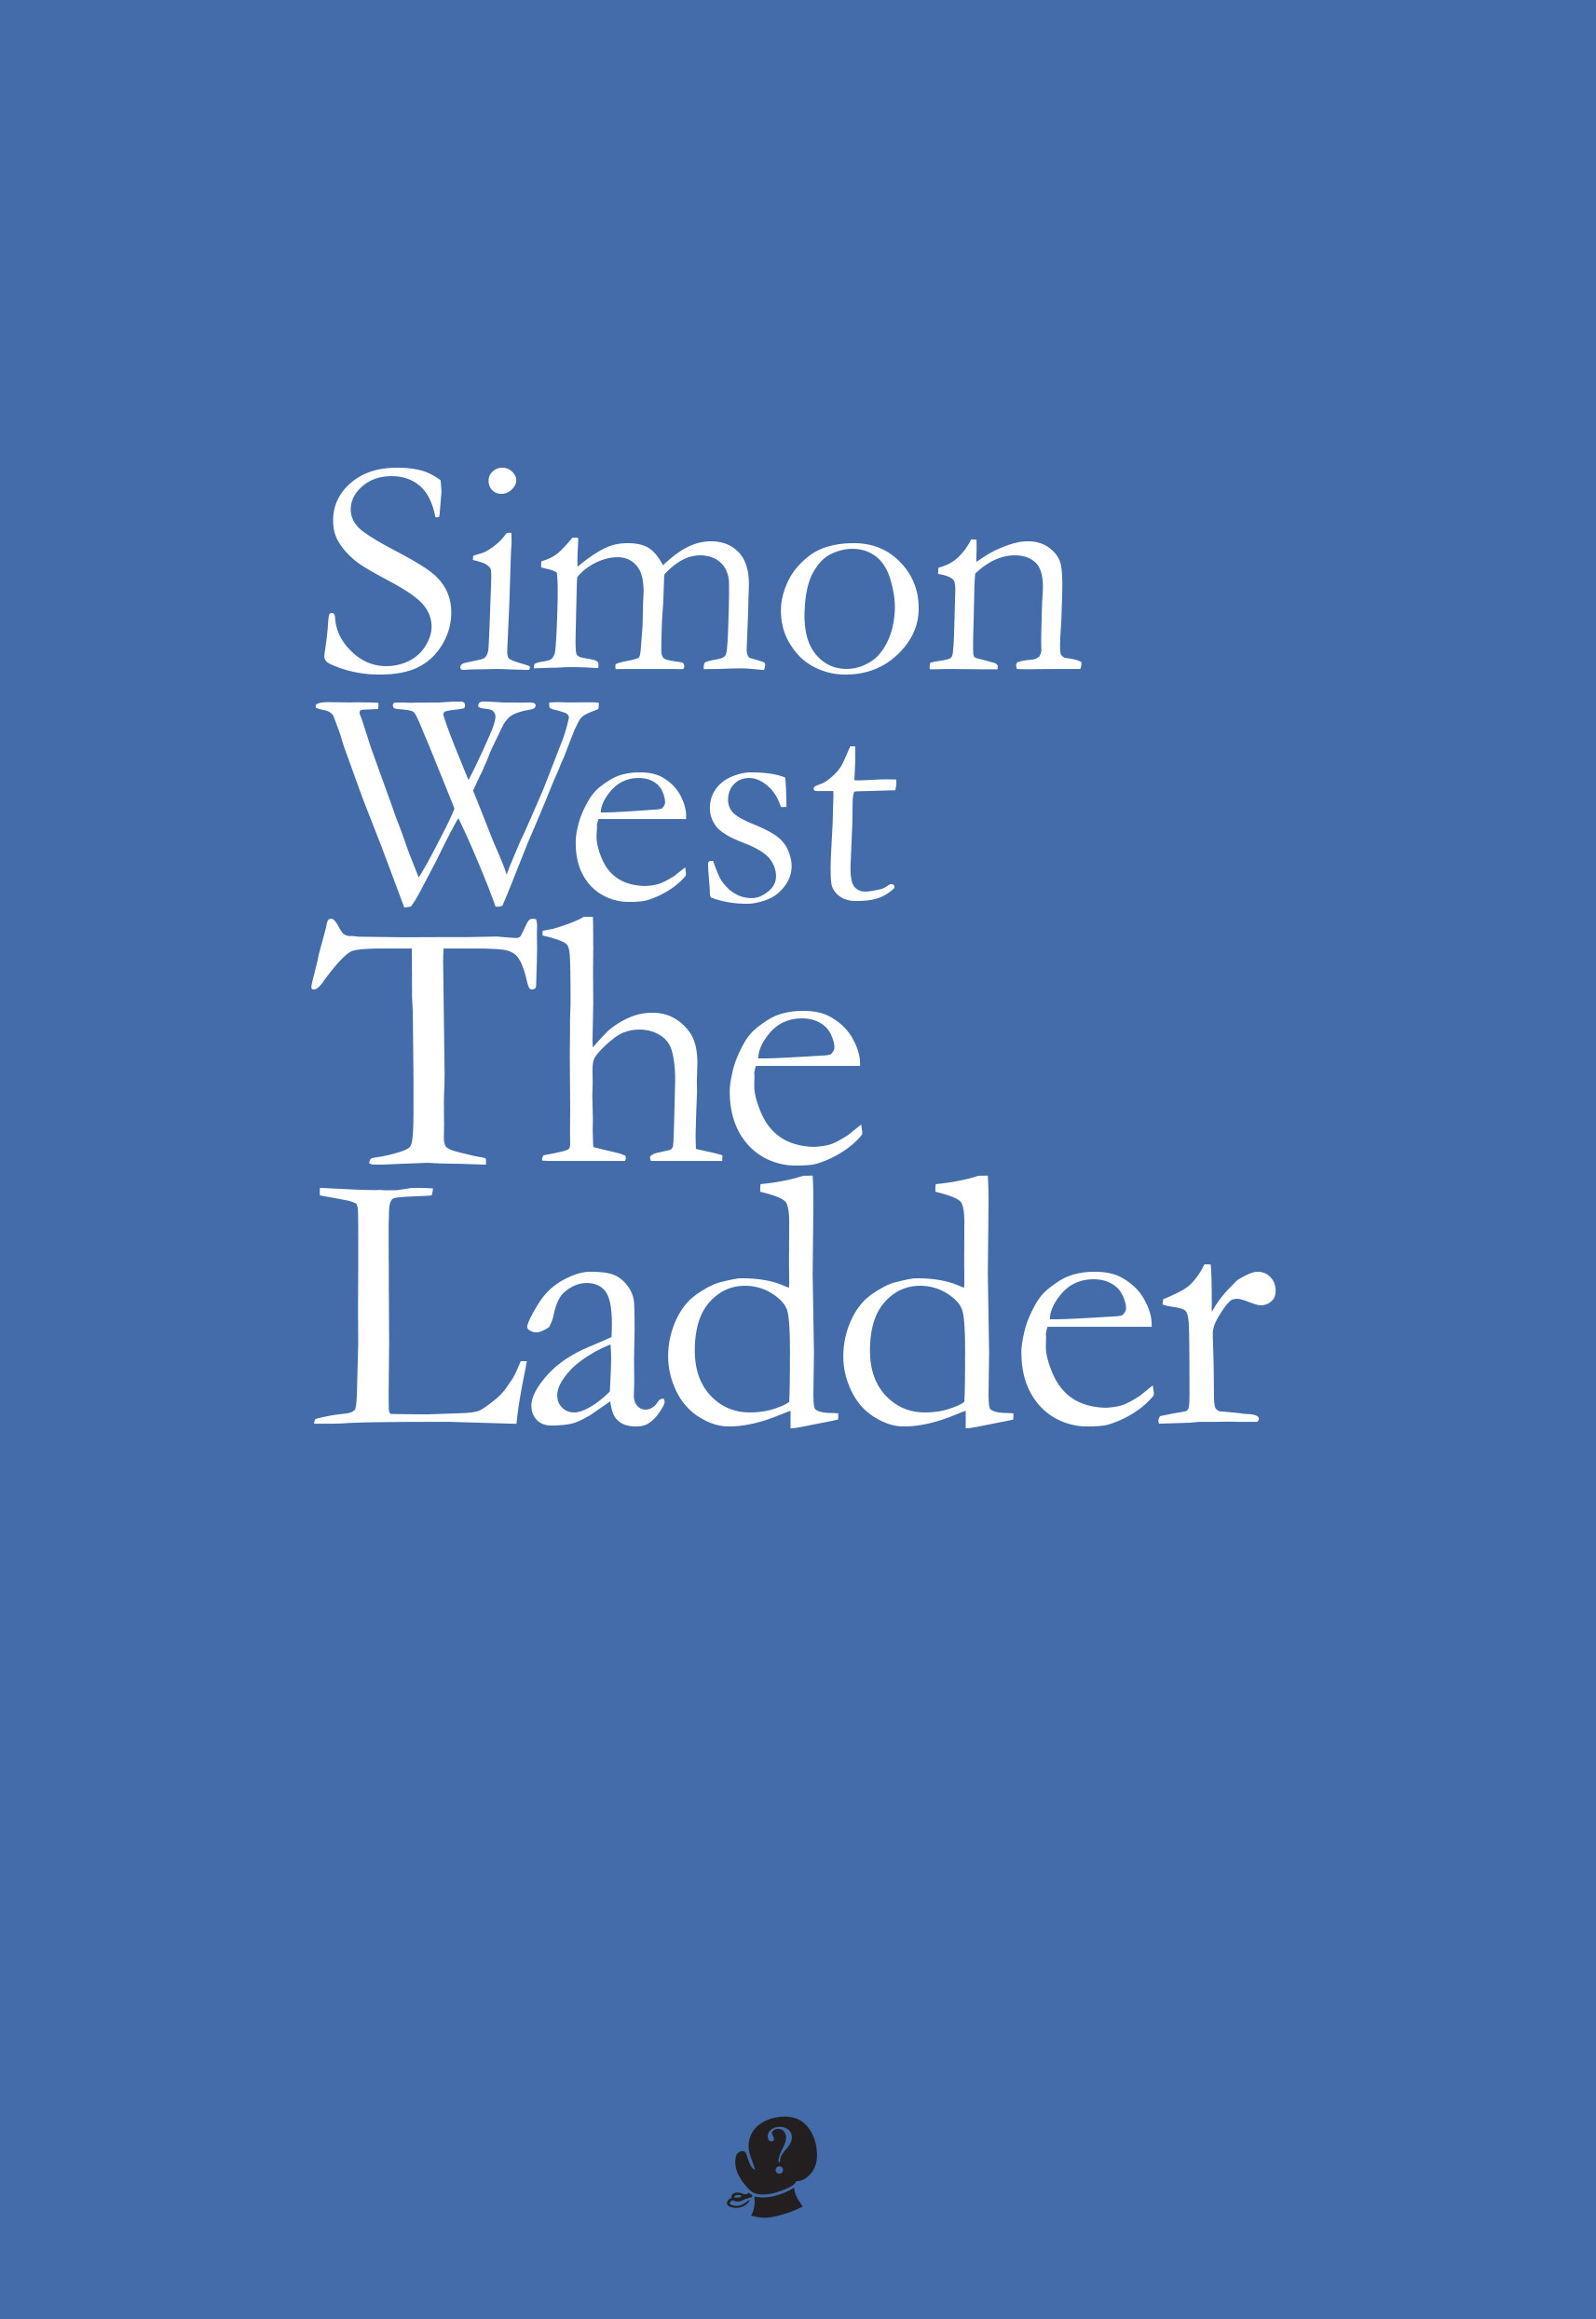 Simon West The Ladder - colour